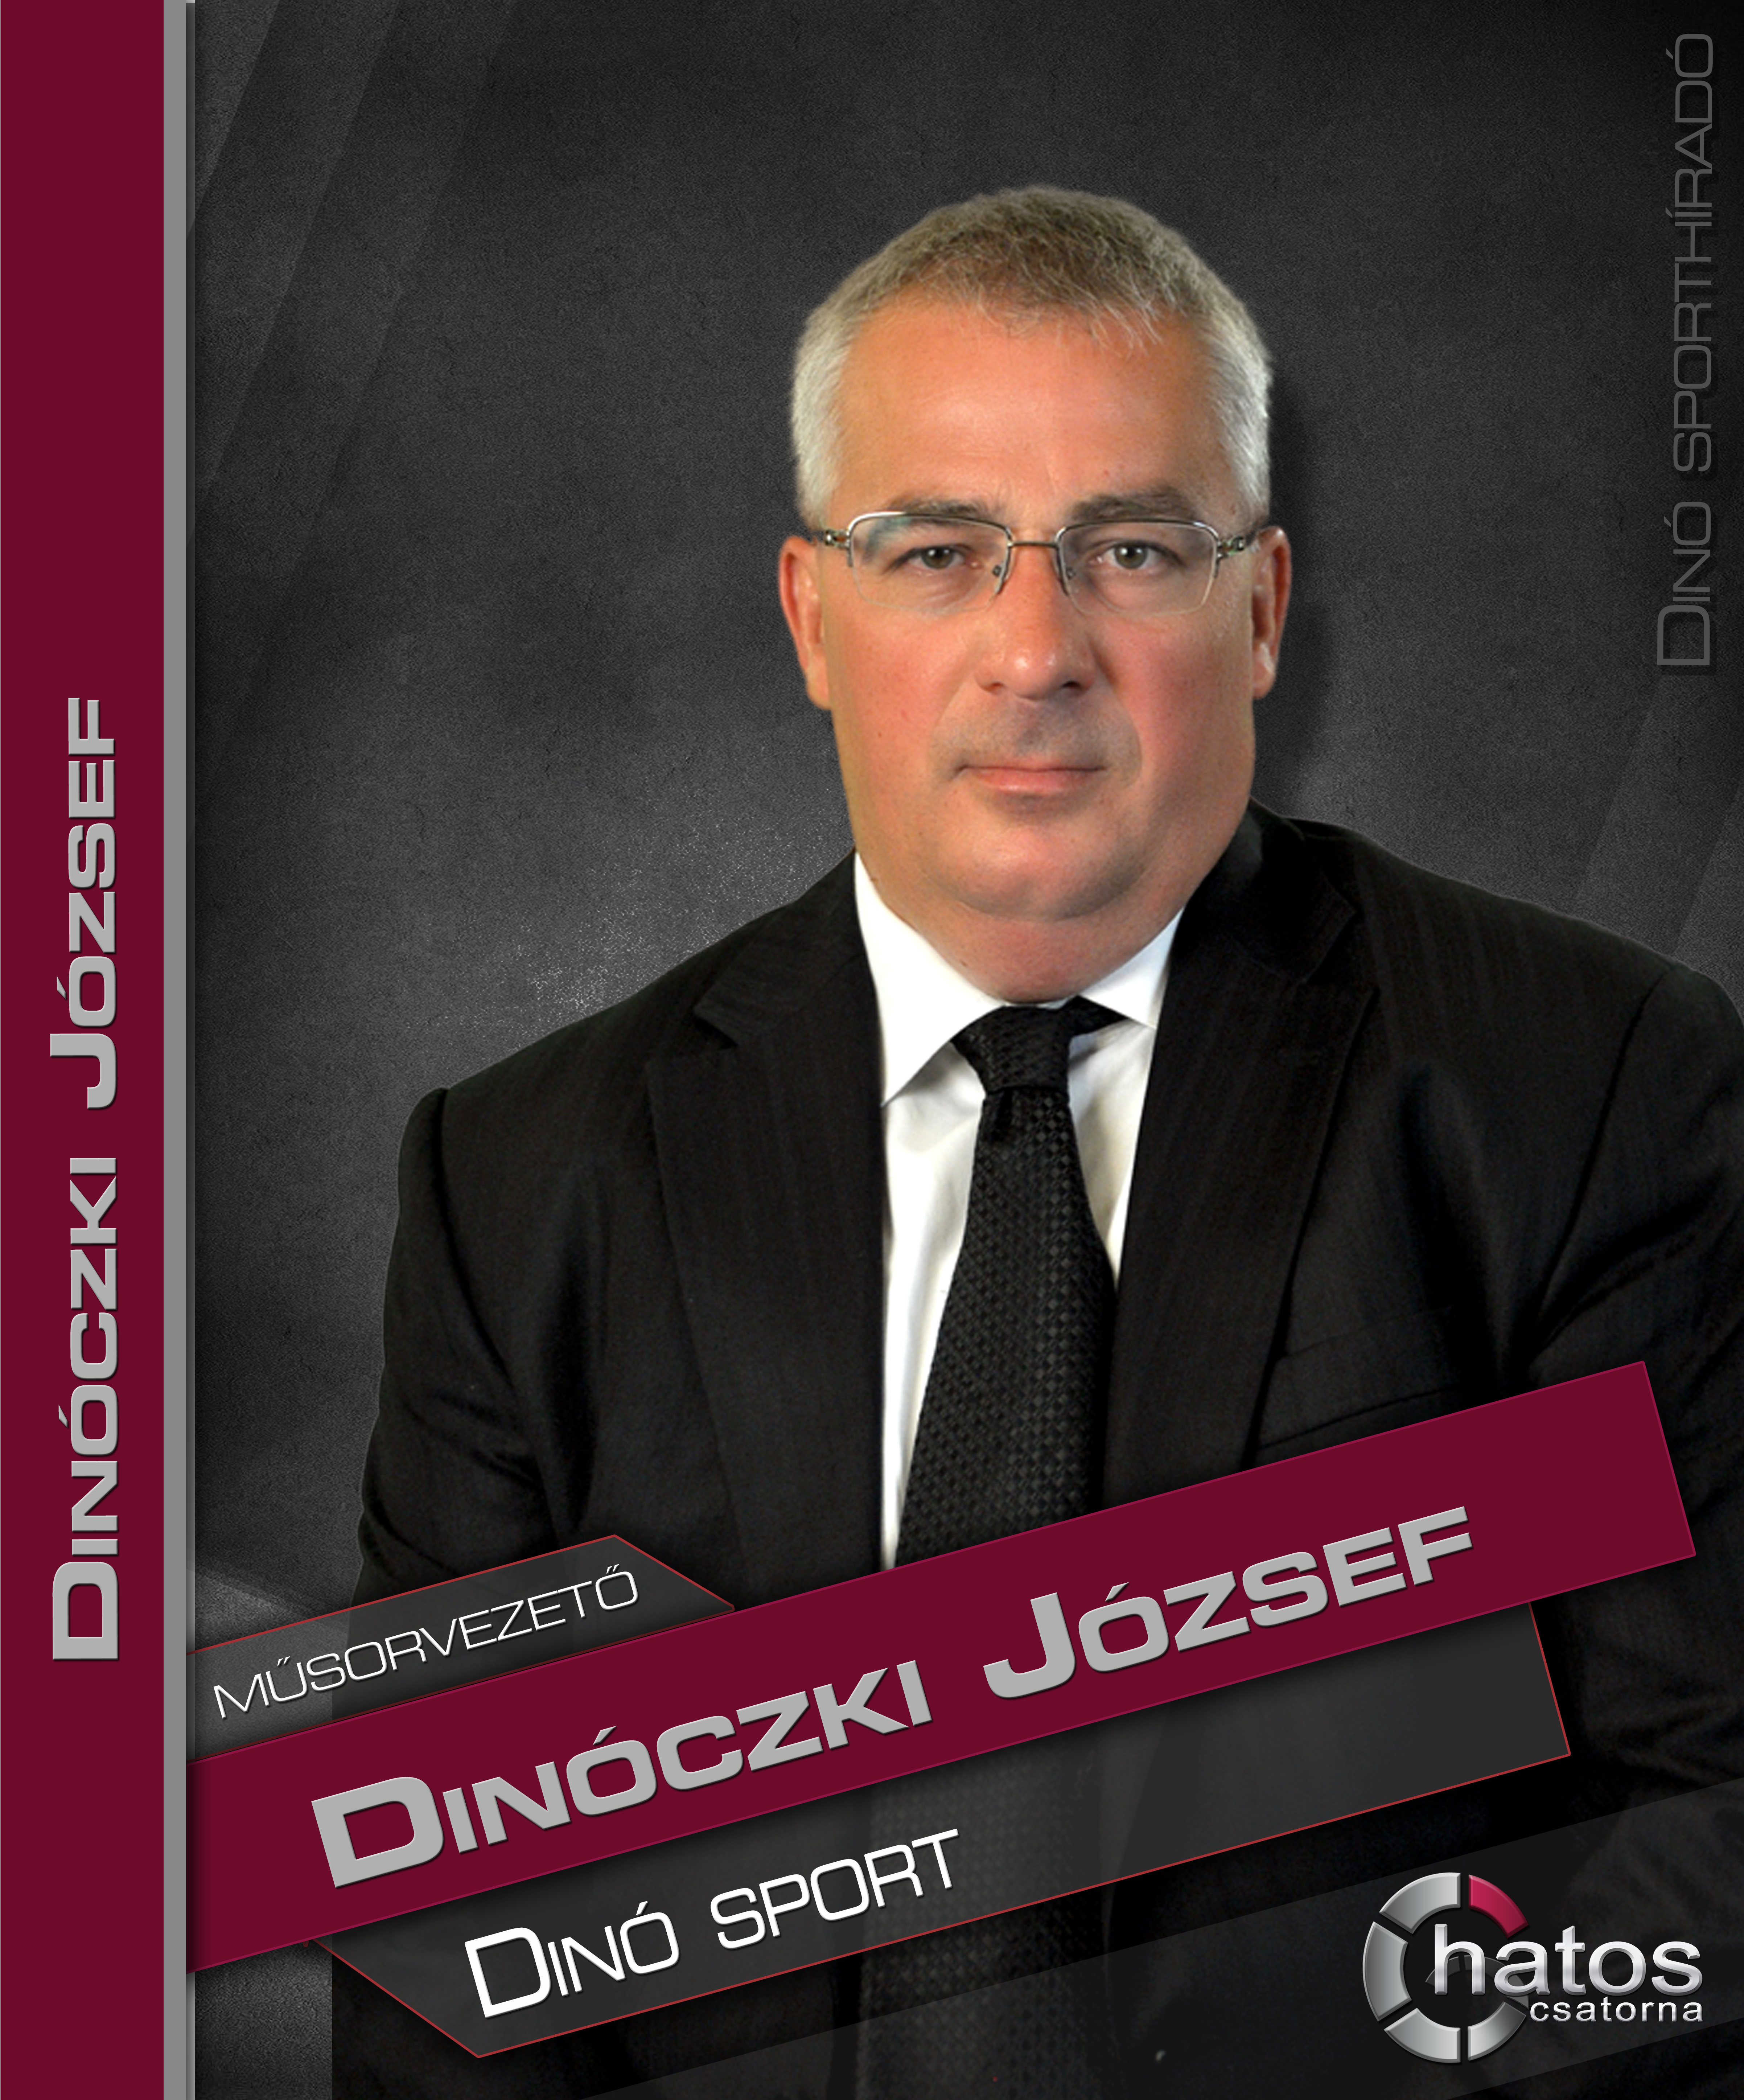 Dinóczki József